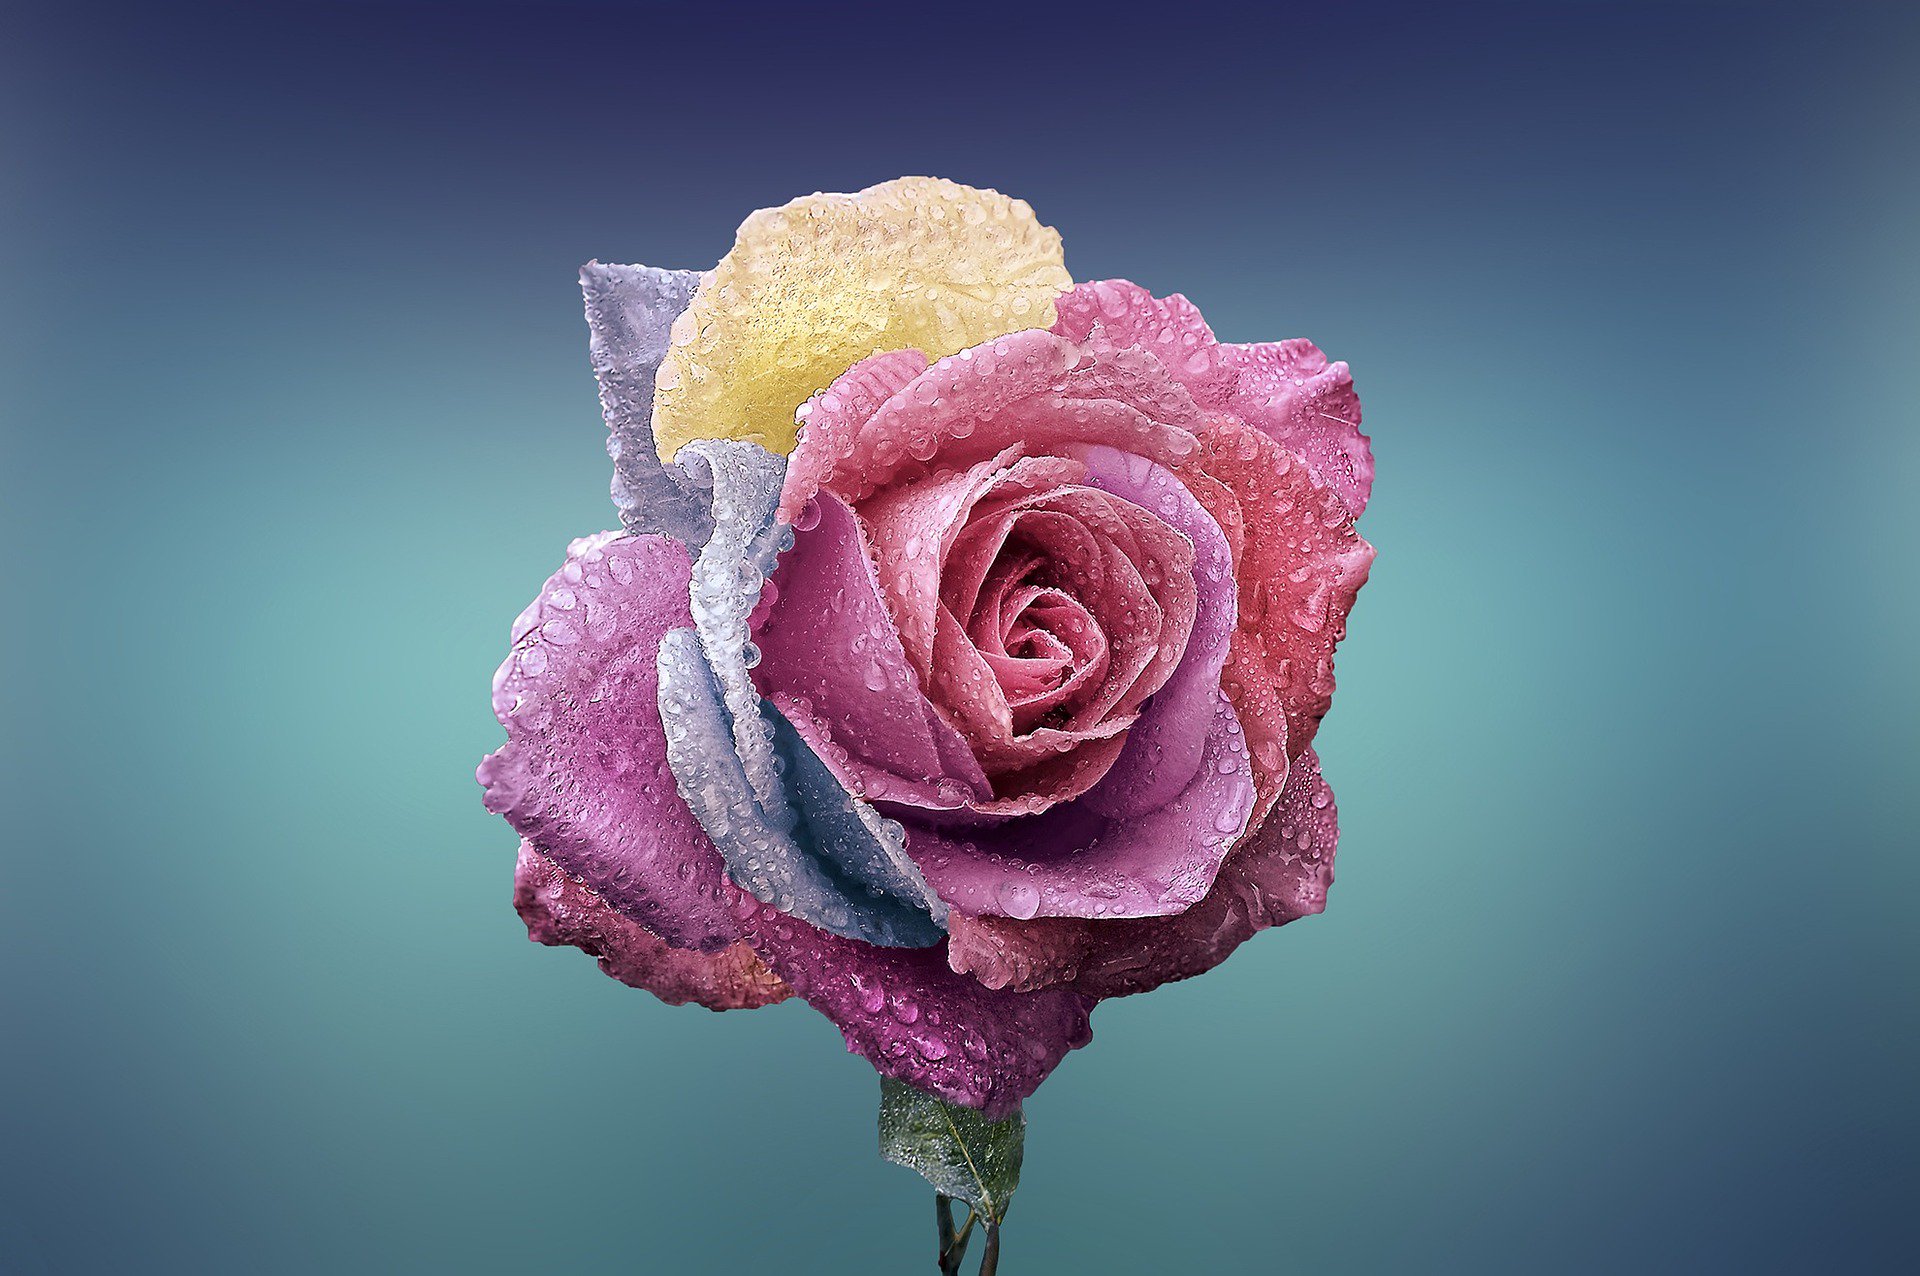 Một bông hoa hồng đẹp là một tác phẩm nghệ thuật thiên nhiên tuyệt vời, nó đã được tạo ra với sự kết hợp hoàn hảo của những màu sắc tinh tế và đường nét mềm mại. Hãy tận hưởng vẻ đẹp đó bằng cách ngắm các bông hoa hồng đẹp trong các hình ảnh này.